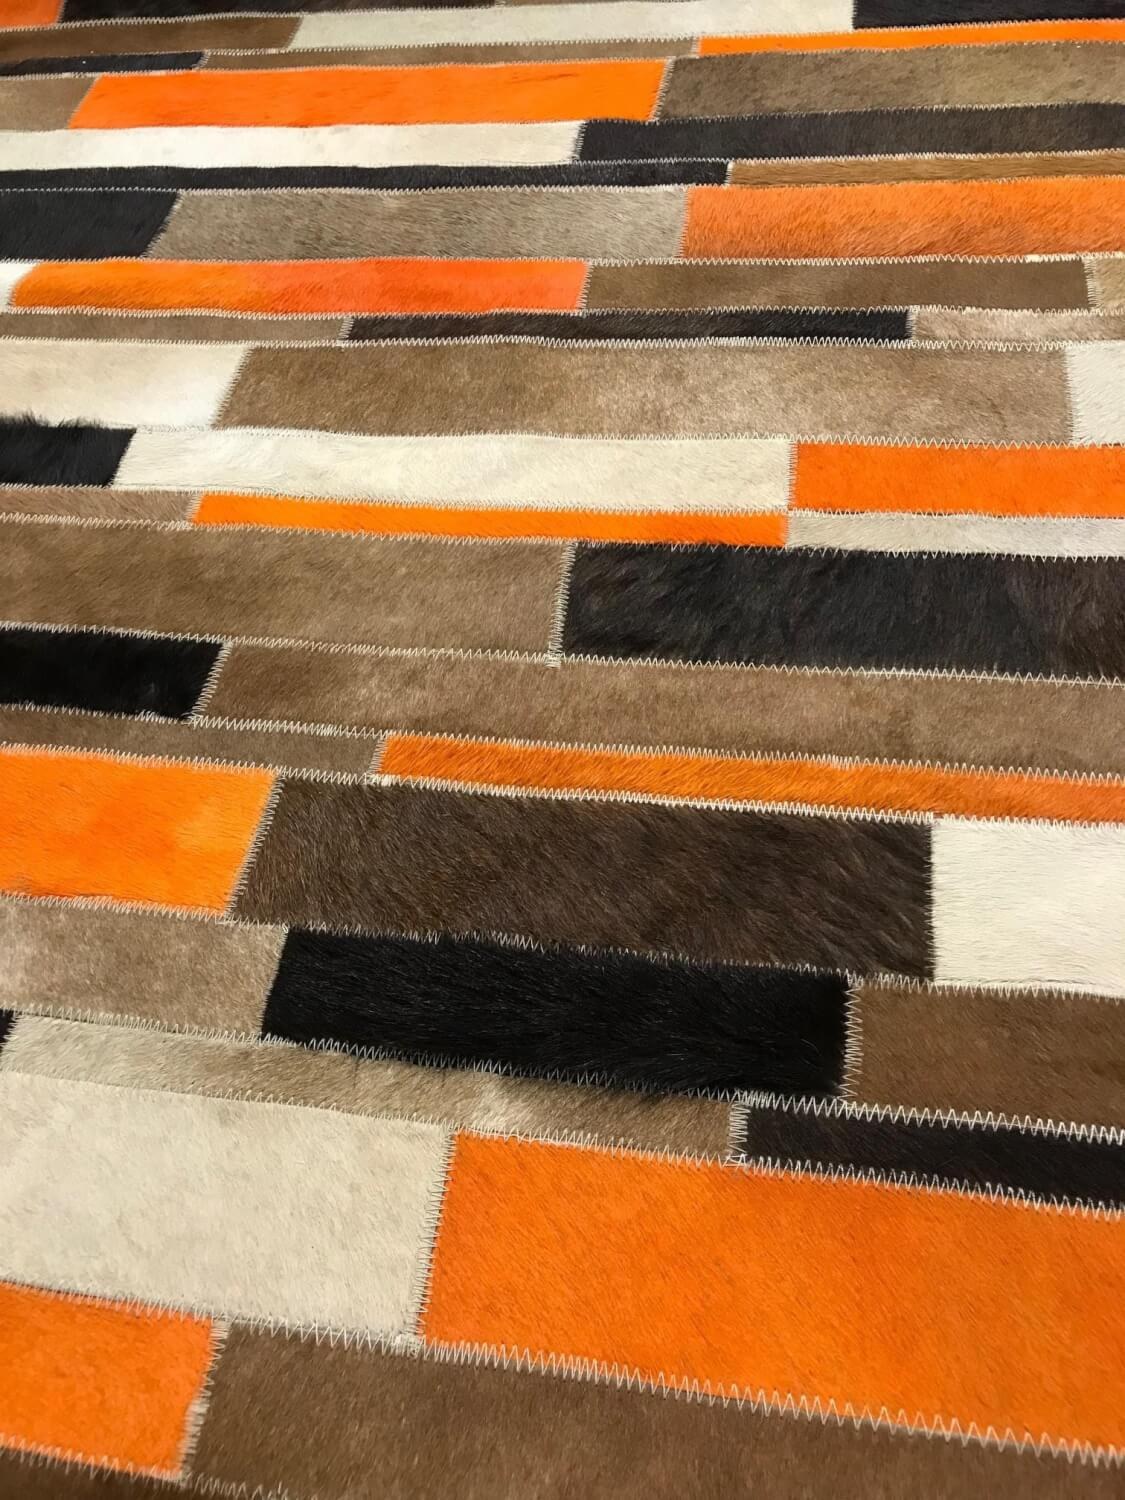 Teppich 37856 Brick Orange Aus Echtleder Kuhfell Gefärbt Orange Braun Schwarz Beige Unterseite Wolle Gewebt